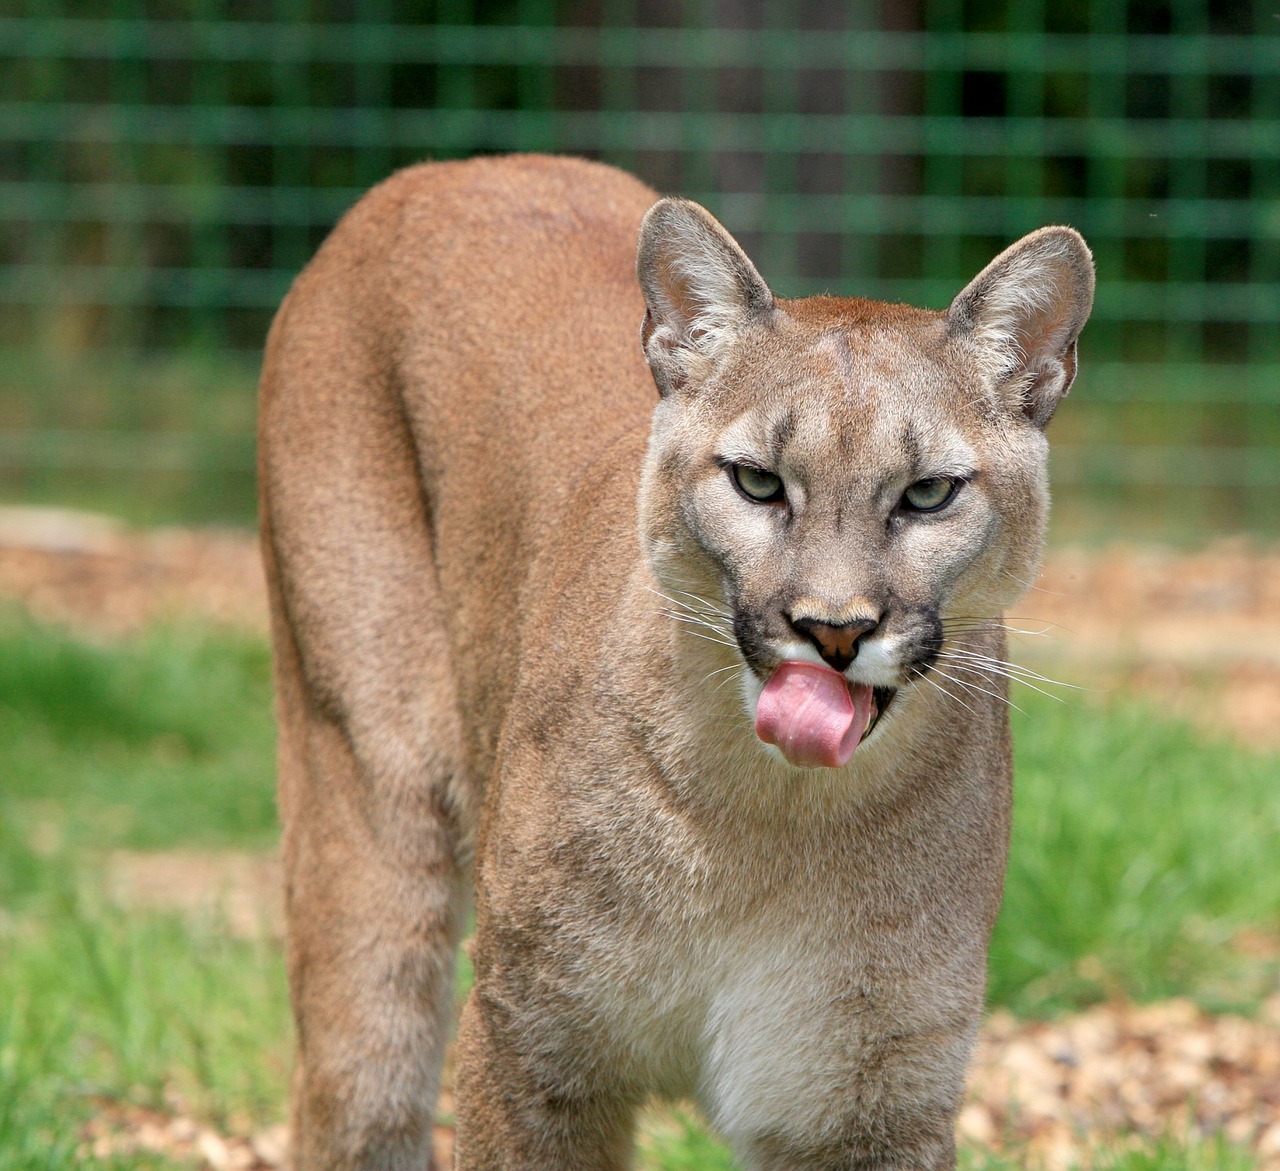 Cougars as Cat Predators